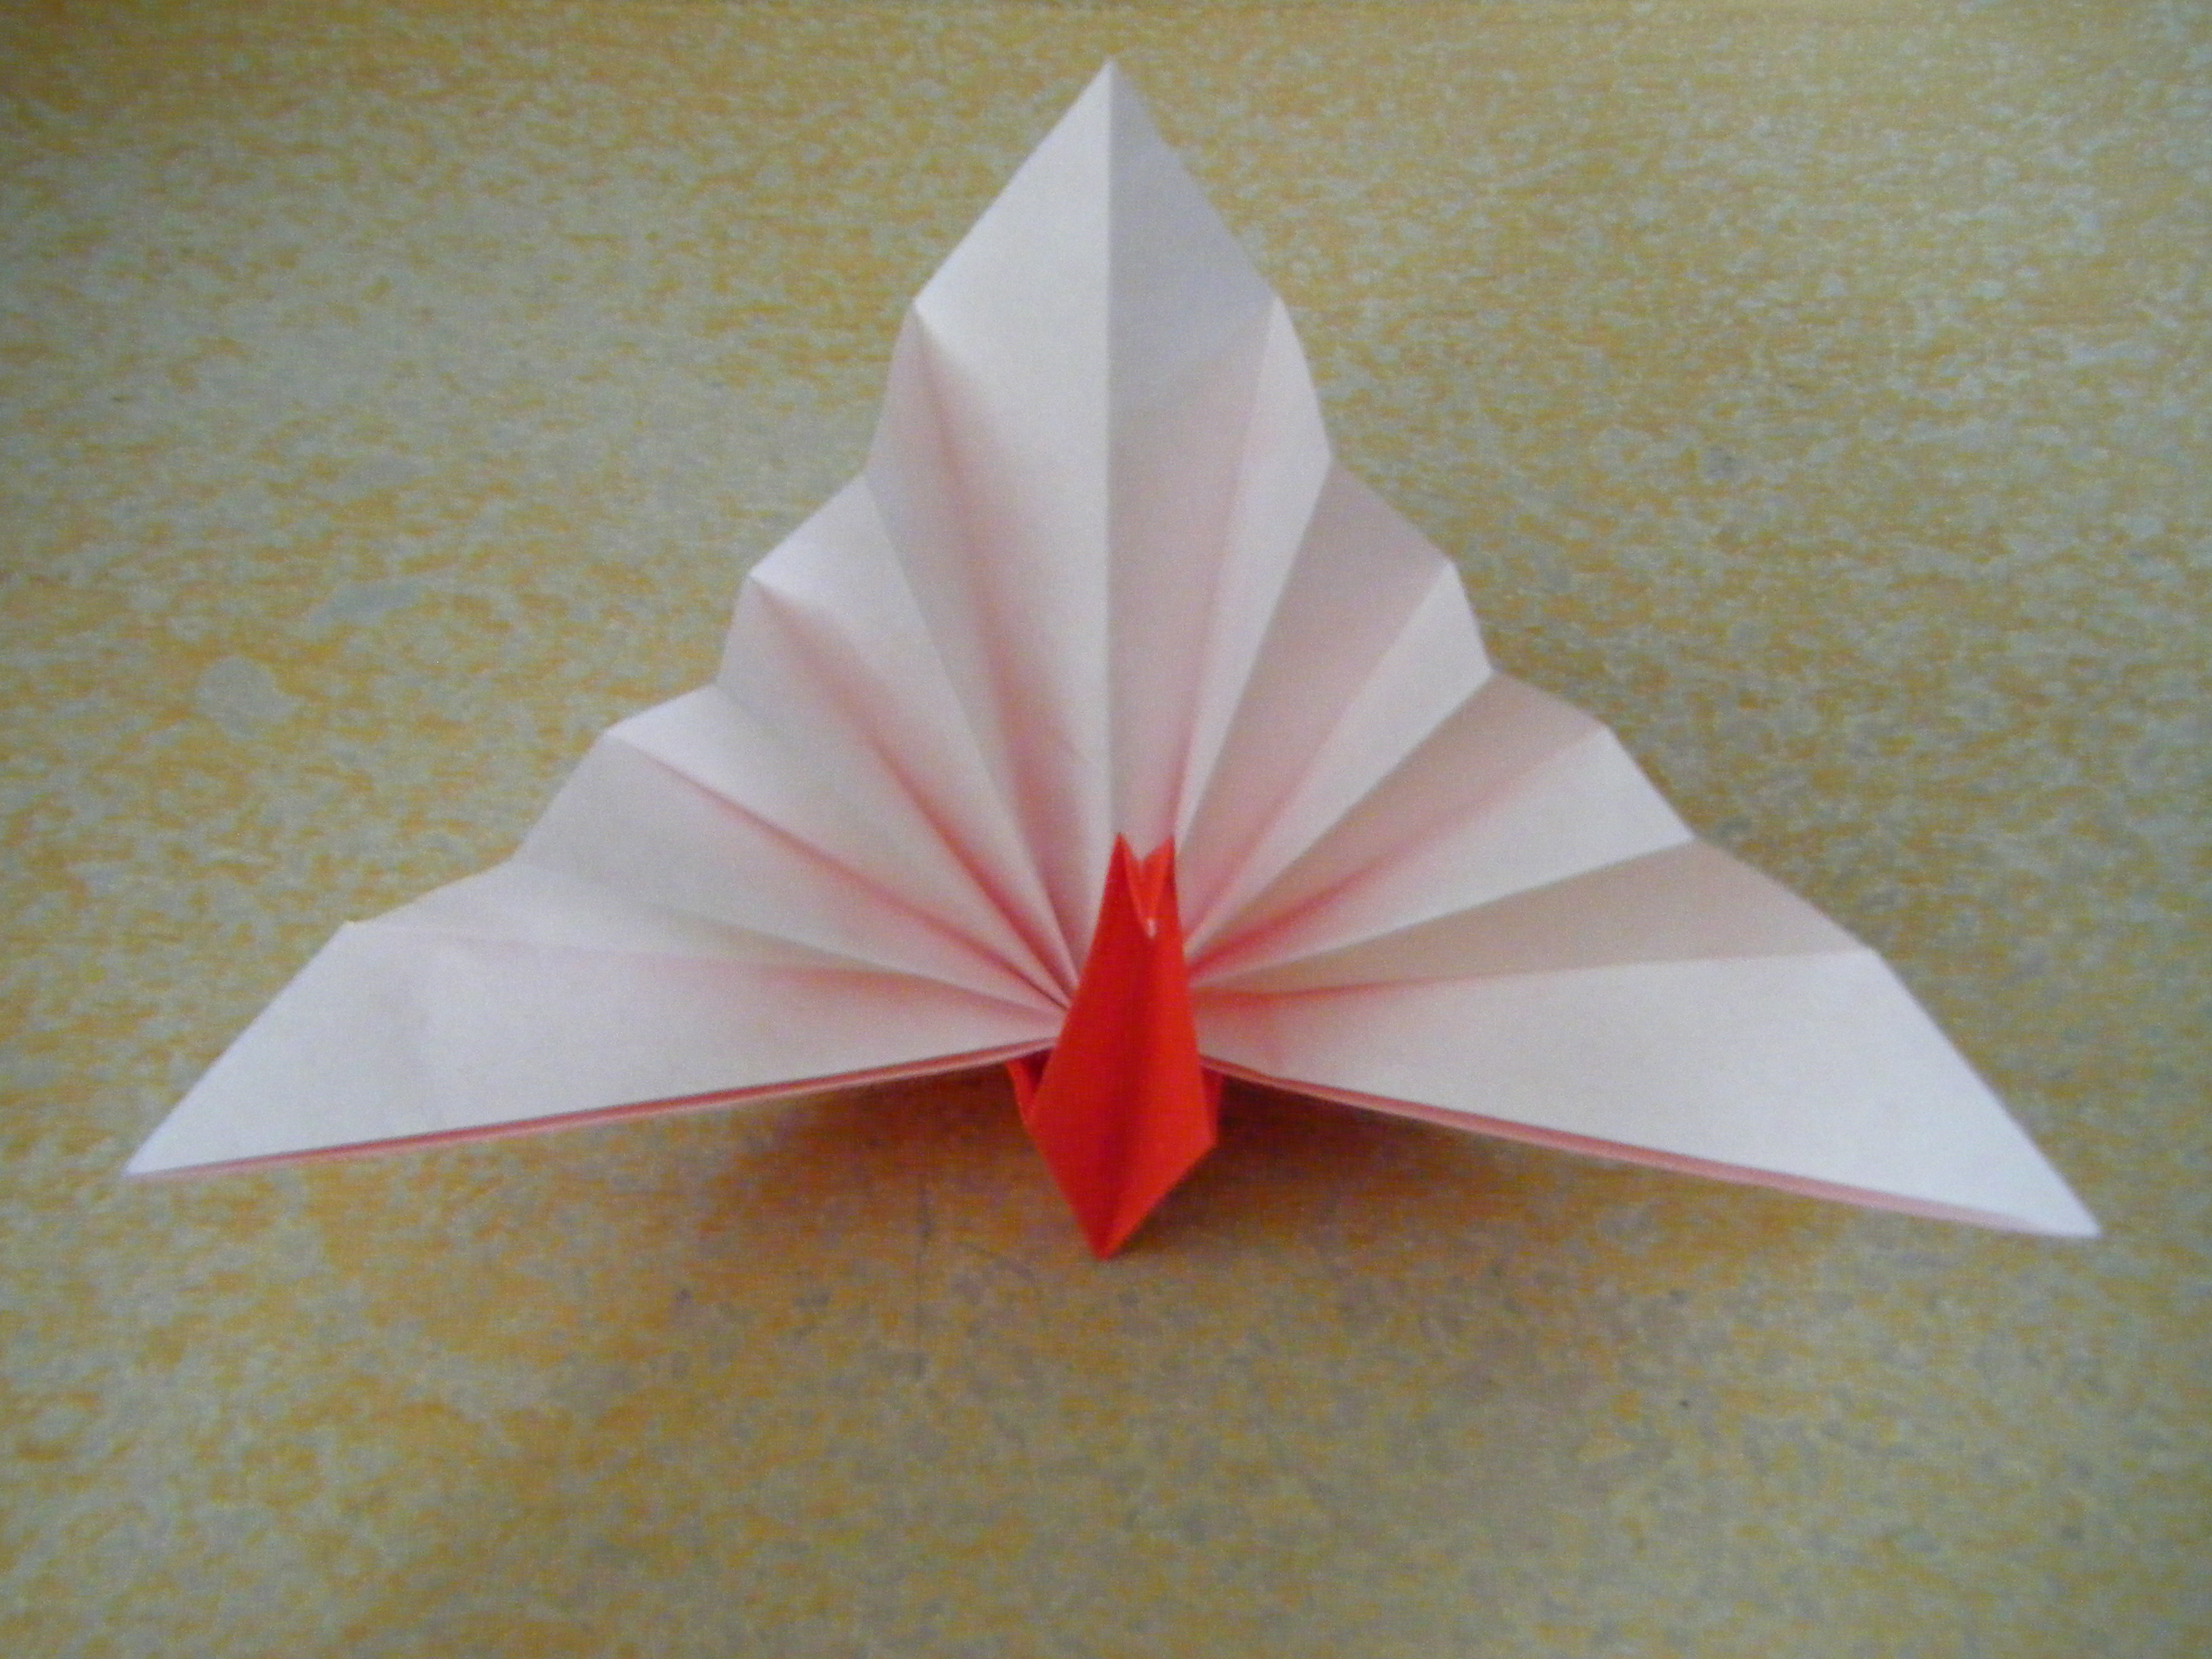 正月飾りに折り紙で鶴を手作り!!簡単な折り方で高齢者や子どもも挑戦だ!! | ポッチャリータイムズ